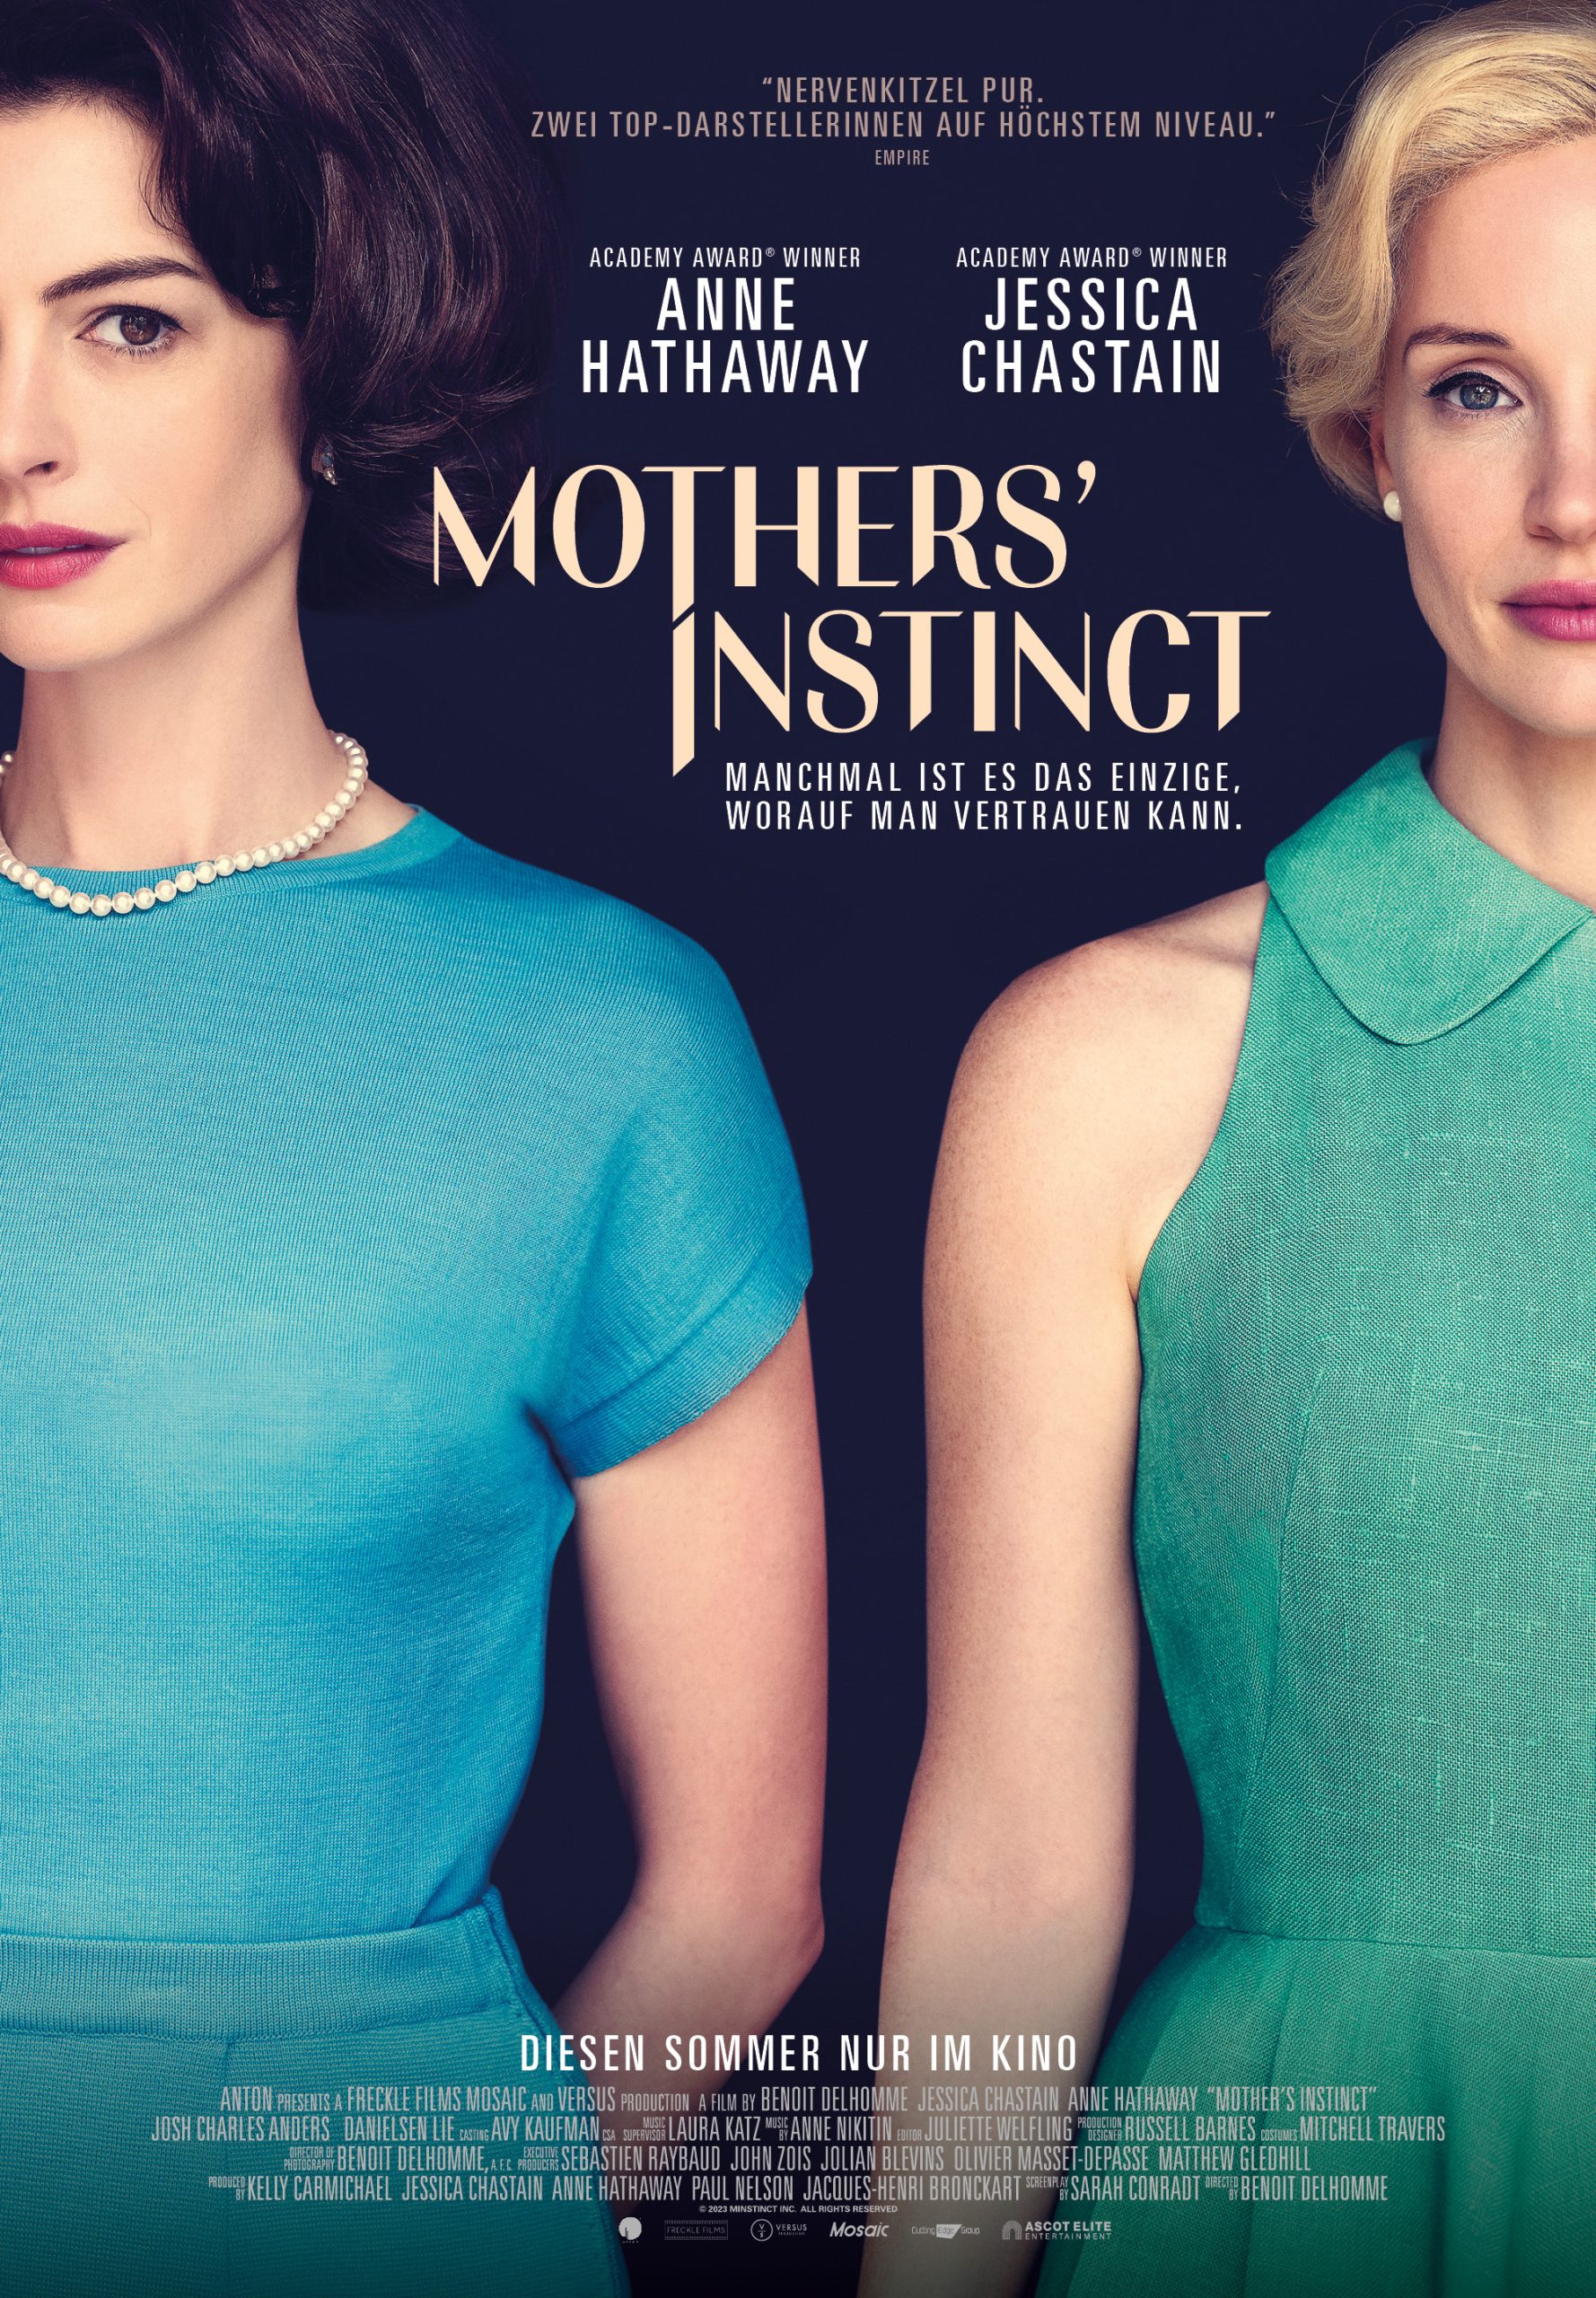 Filmplakat von "Mother's Instinct" mit Anne Hathaway und Jessica Chastain in eleganten Kleidern